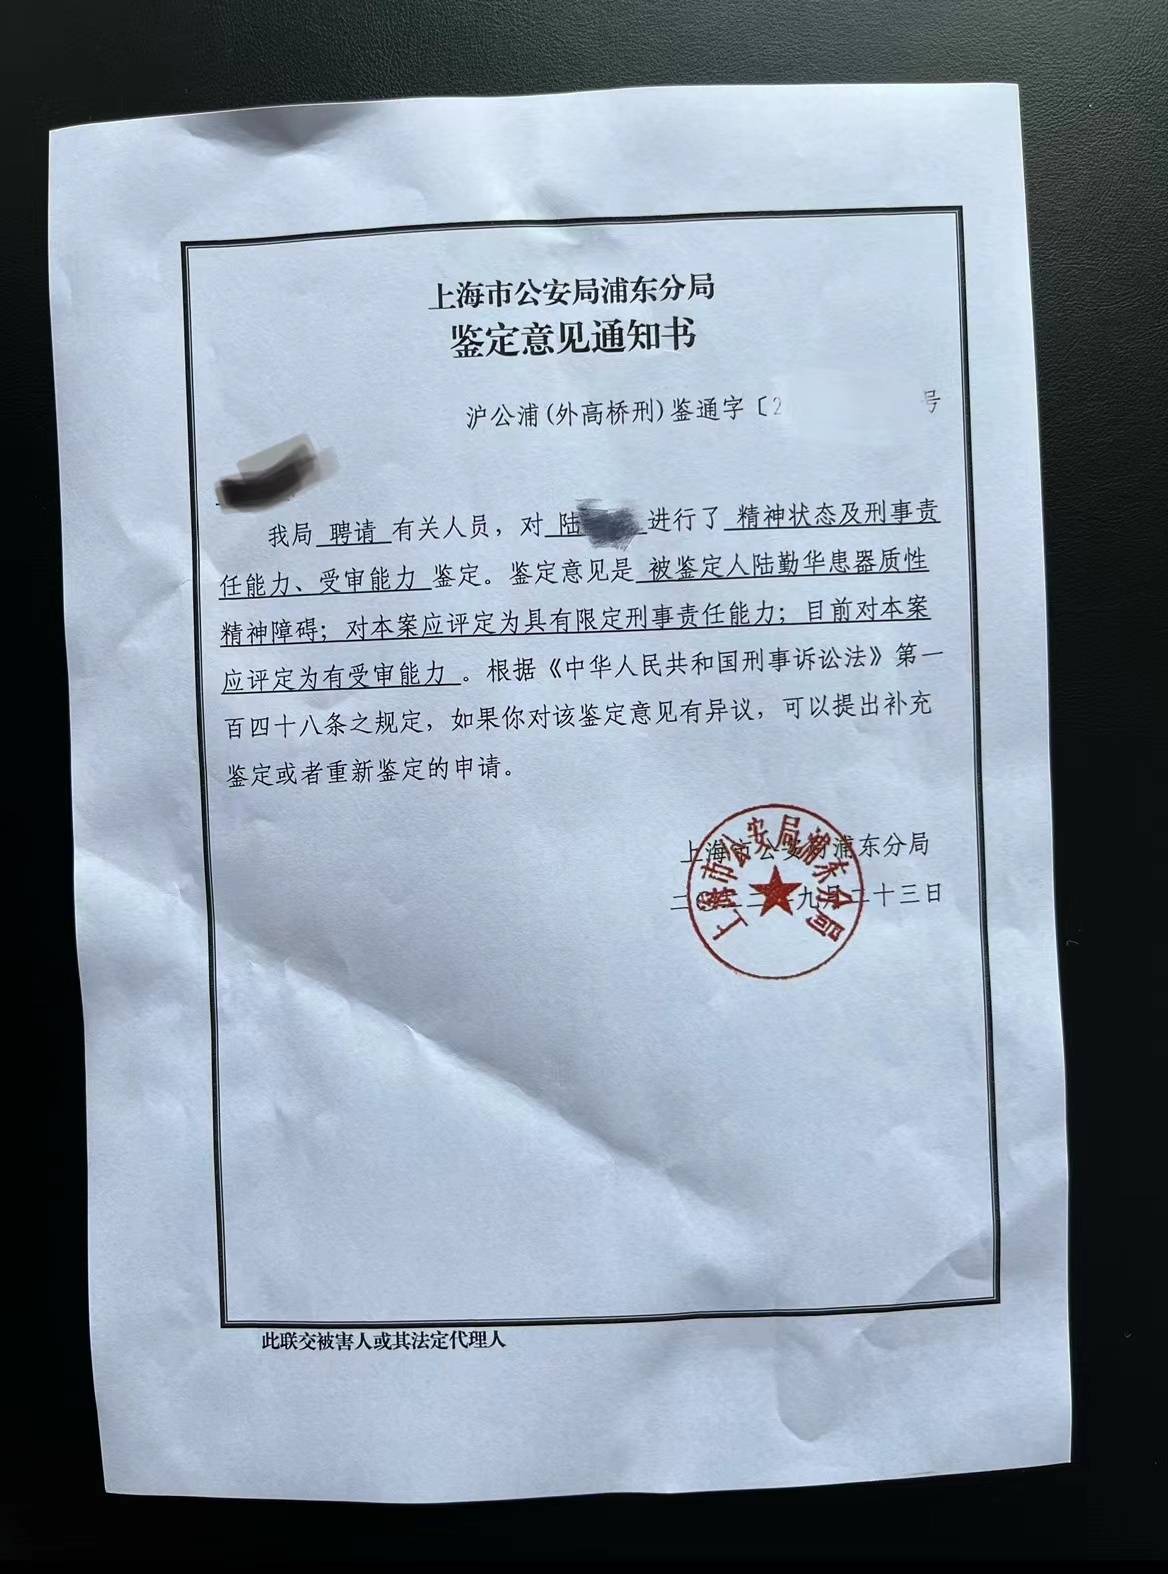 华为手机时间字体大小
:上海故意推倒摩托车老人去世 受损车主坚持索赔“拒绝道德绑架”